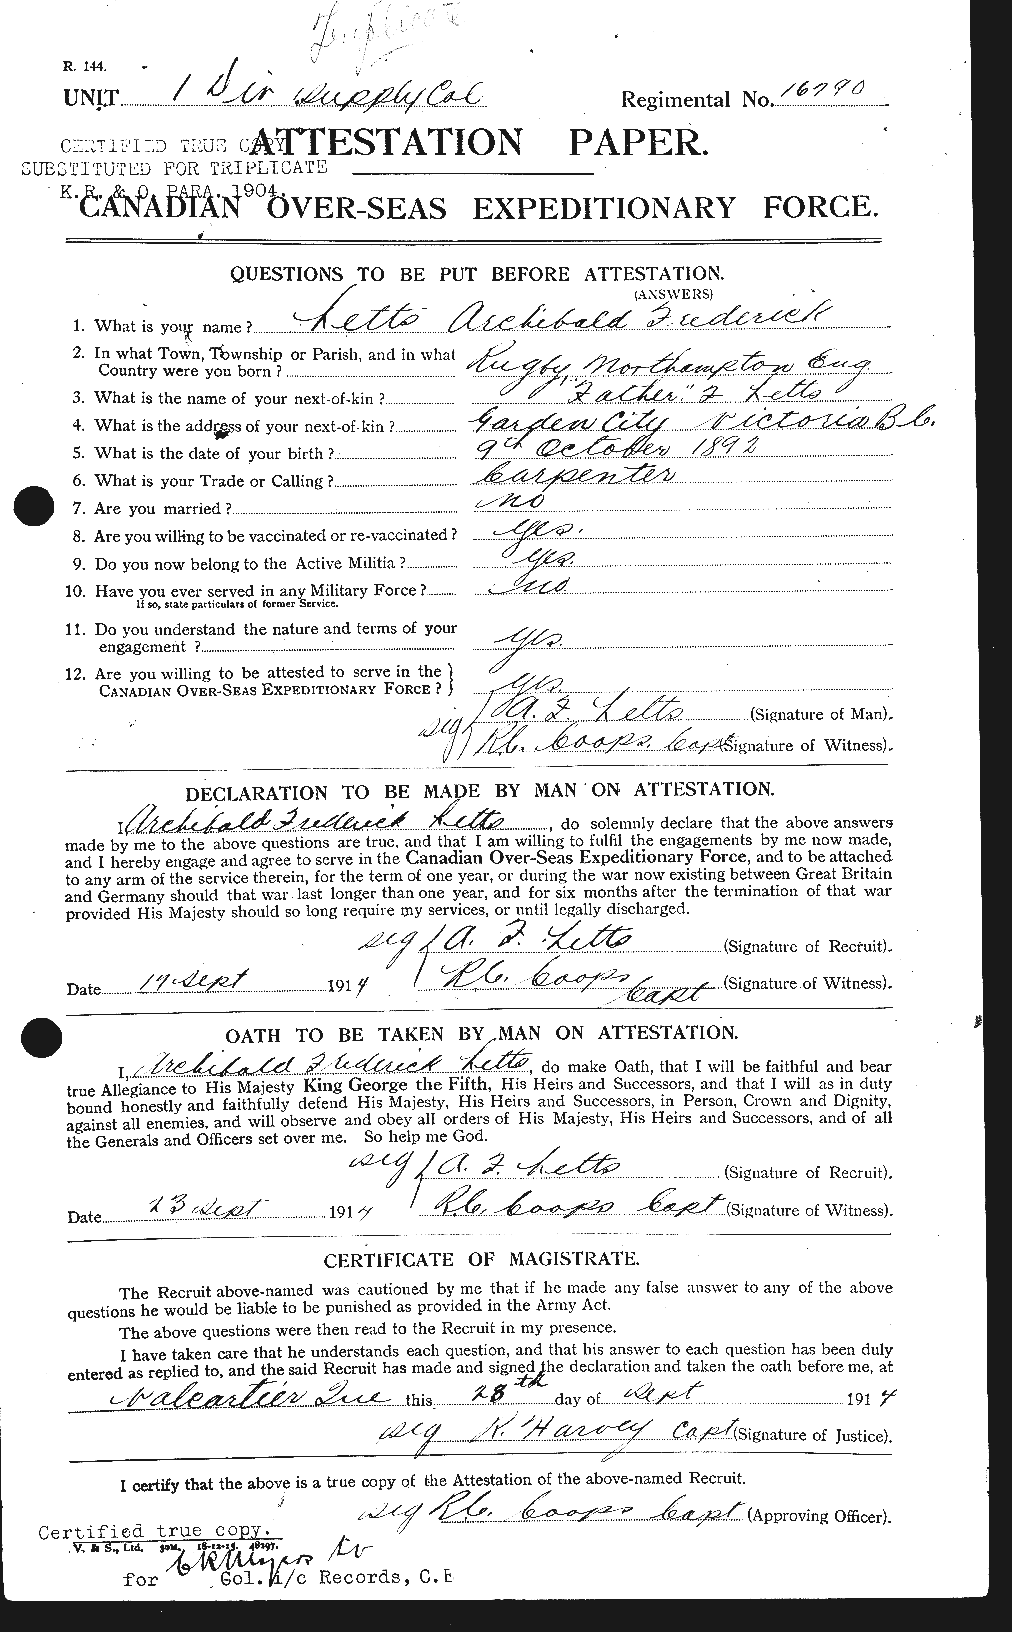 Dossiers du Personnel de la Première Guerre mondiale - CEC 463505a